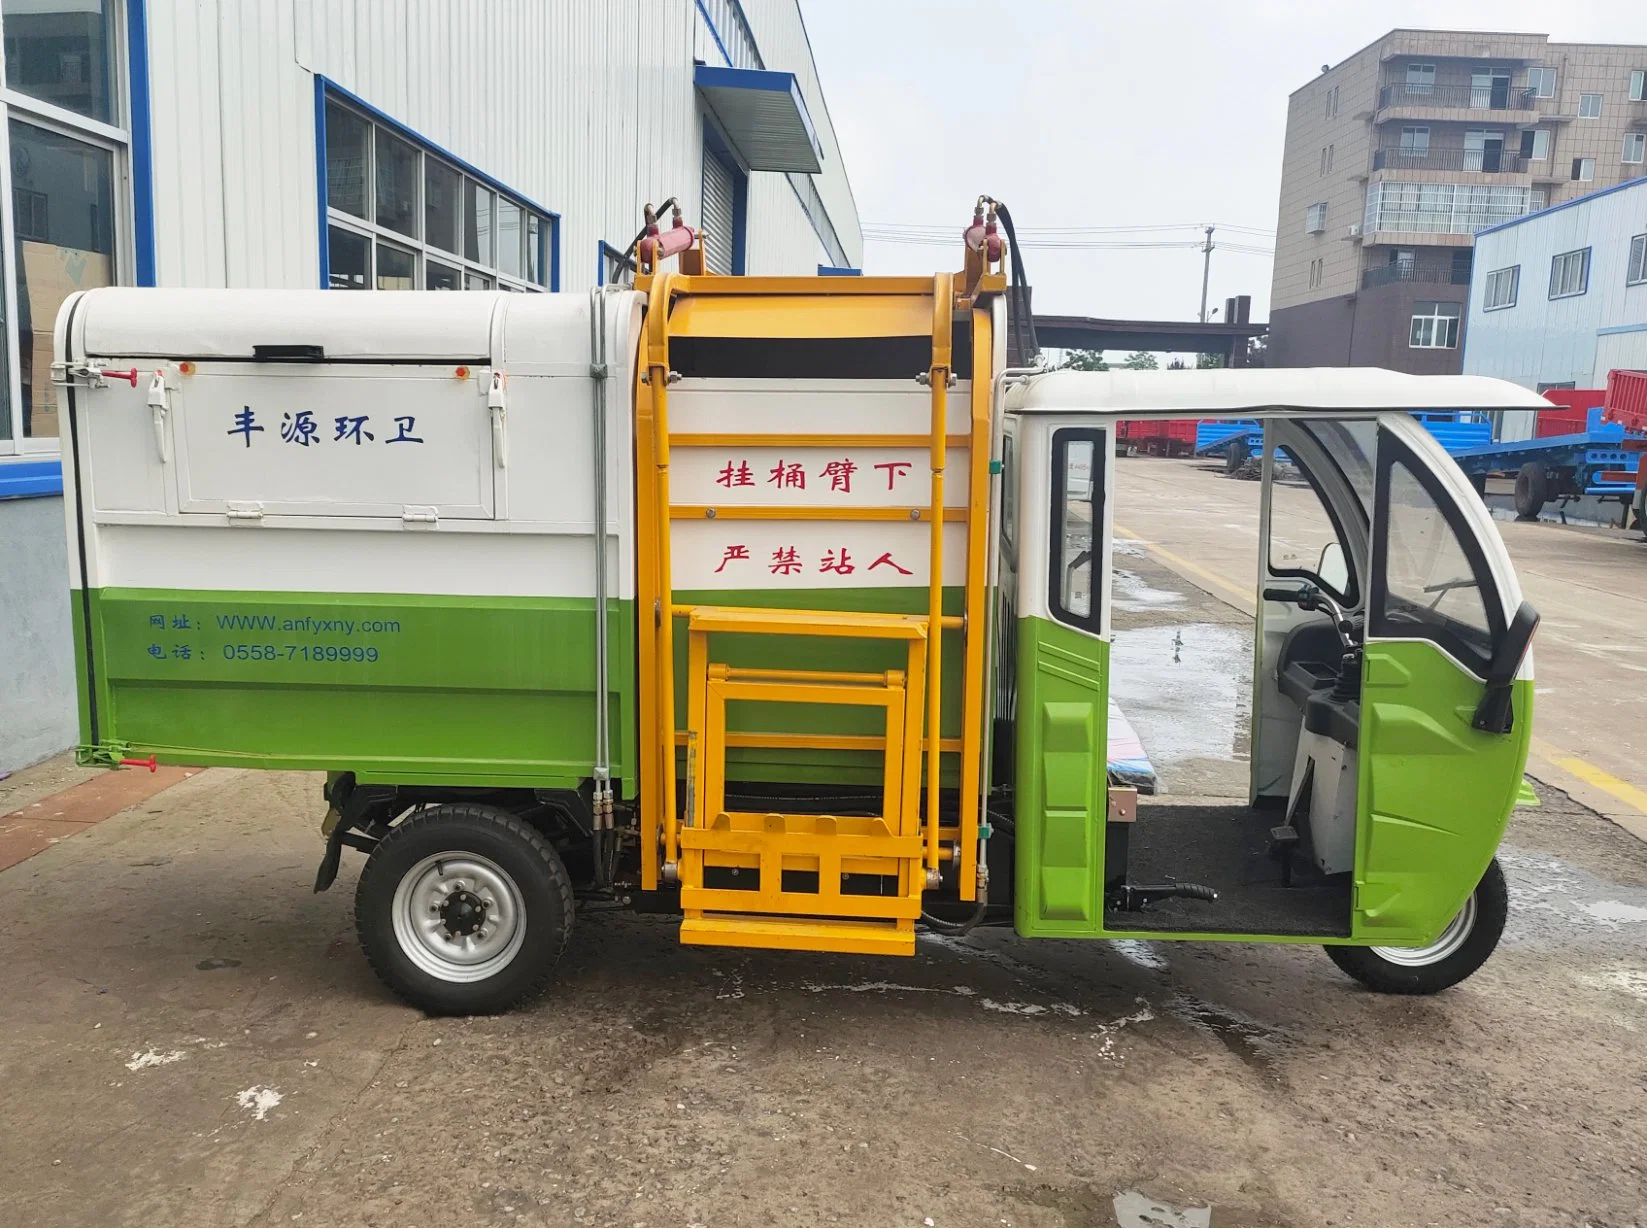 معدات Fengيوان للمرافق الصحية G05 مركبة نقل مجمع القمامة عالية الكفاءة